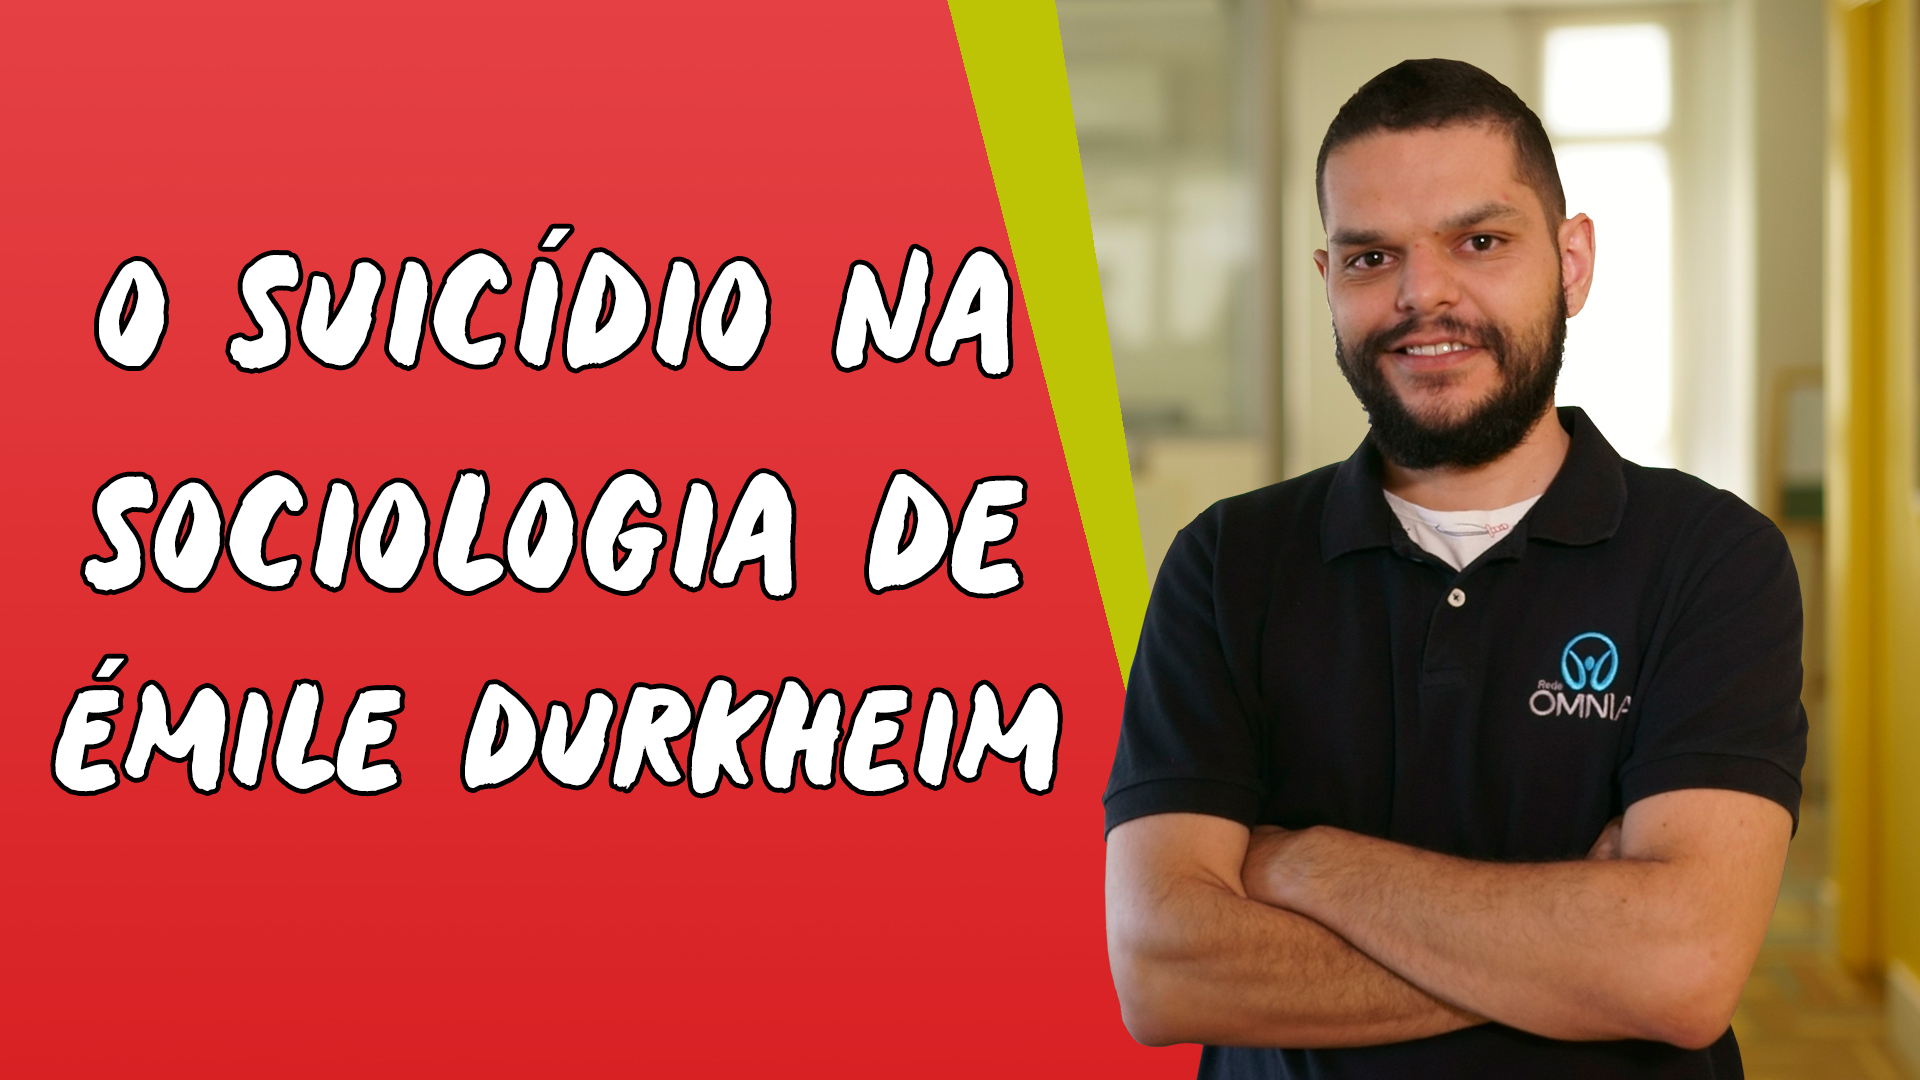 "O Suicídio na Sociologia de Èmile Durkheim" escrito sobre fundo vermelho ao lado da imagem do professor